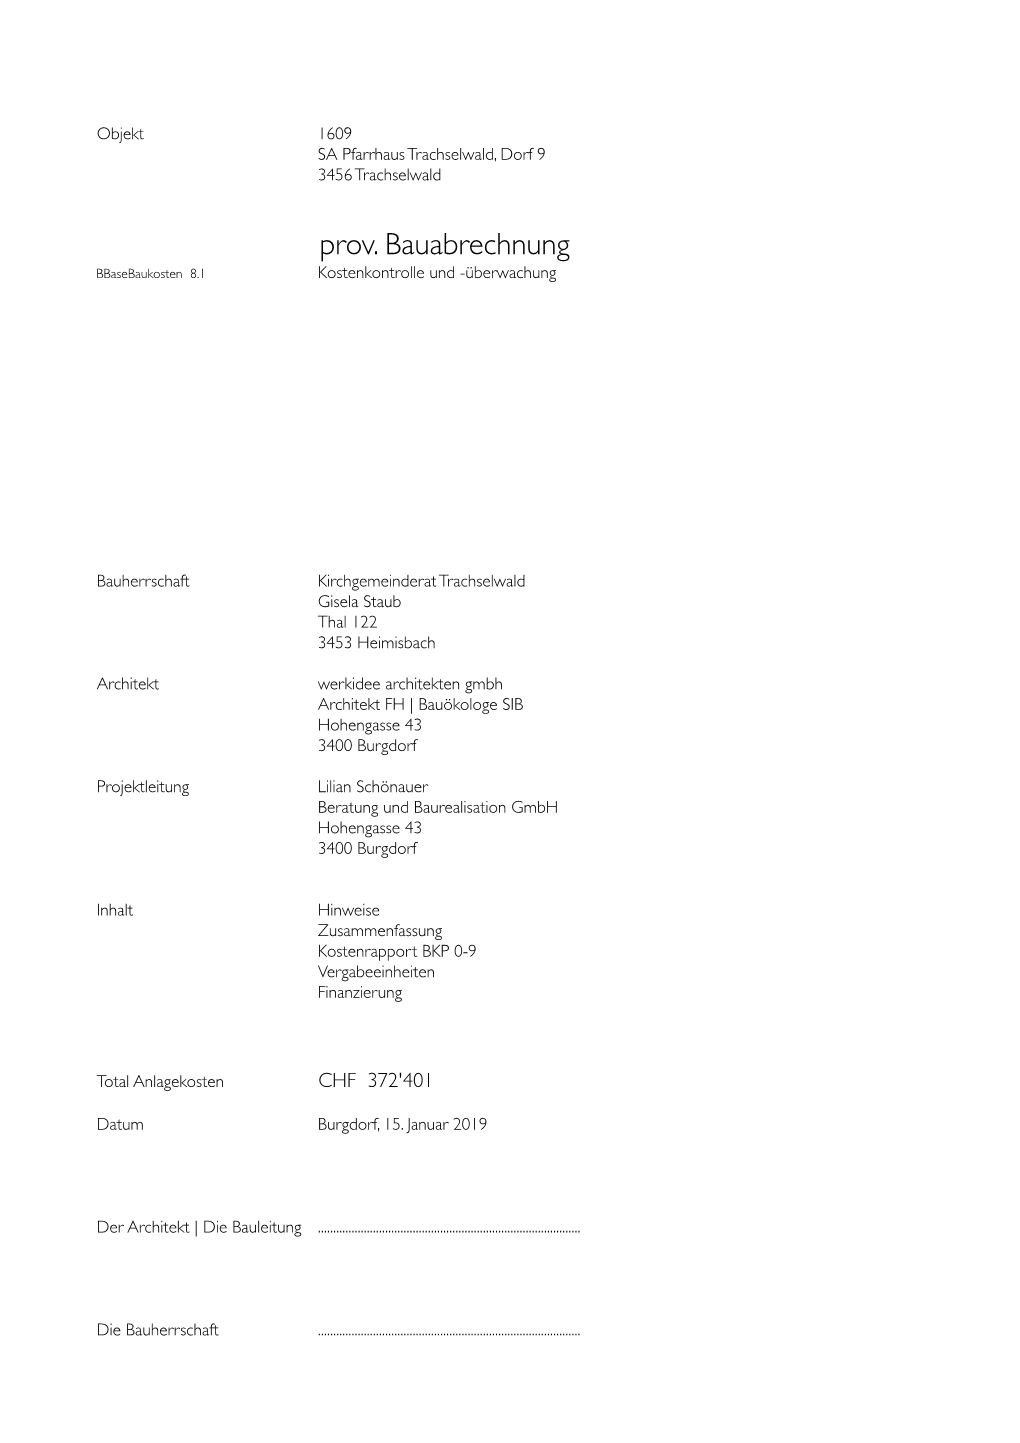 1609 Baubuchhaltung.Xls - 15.01.19 Seite 2 Lilian Schönauer Beratung Und Baurealisation Gmbh, 3400 Burgdorf